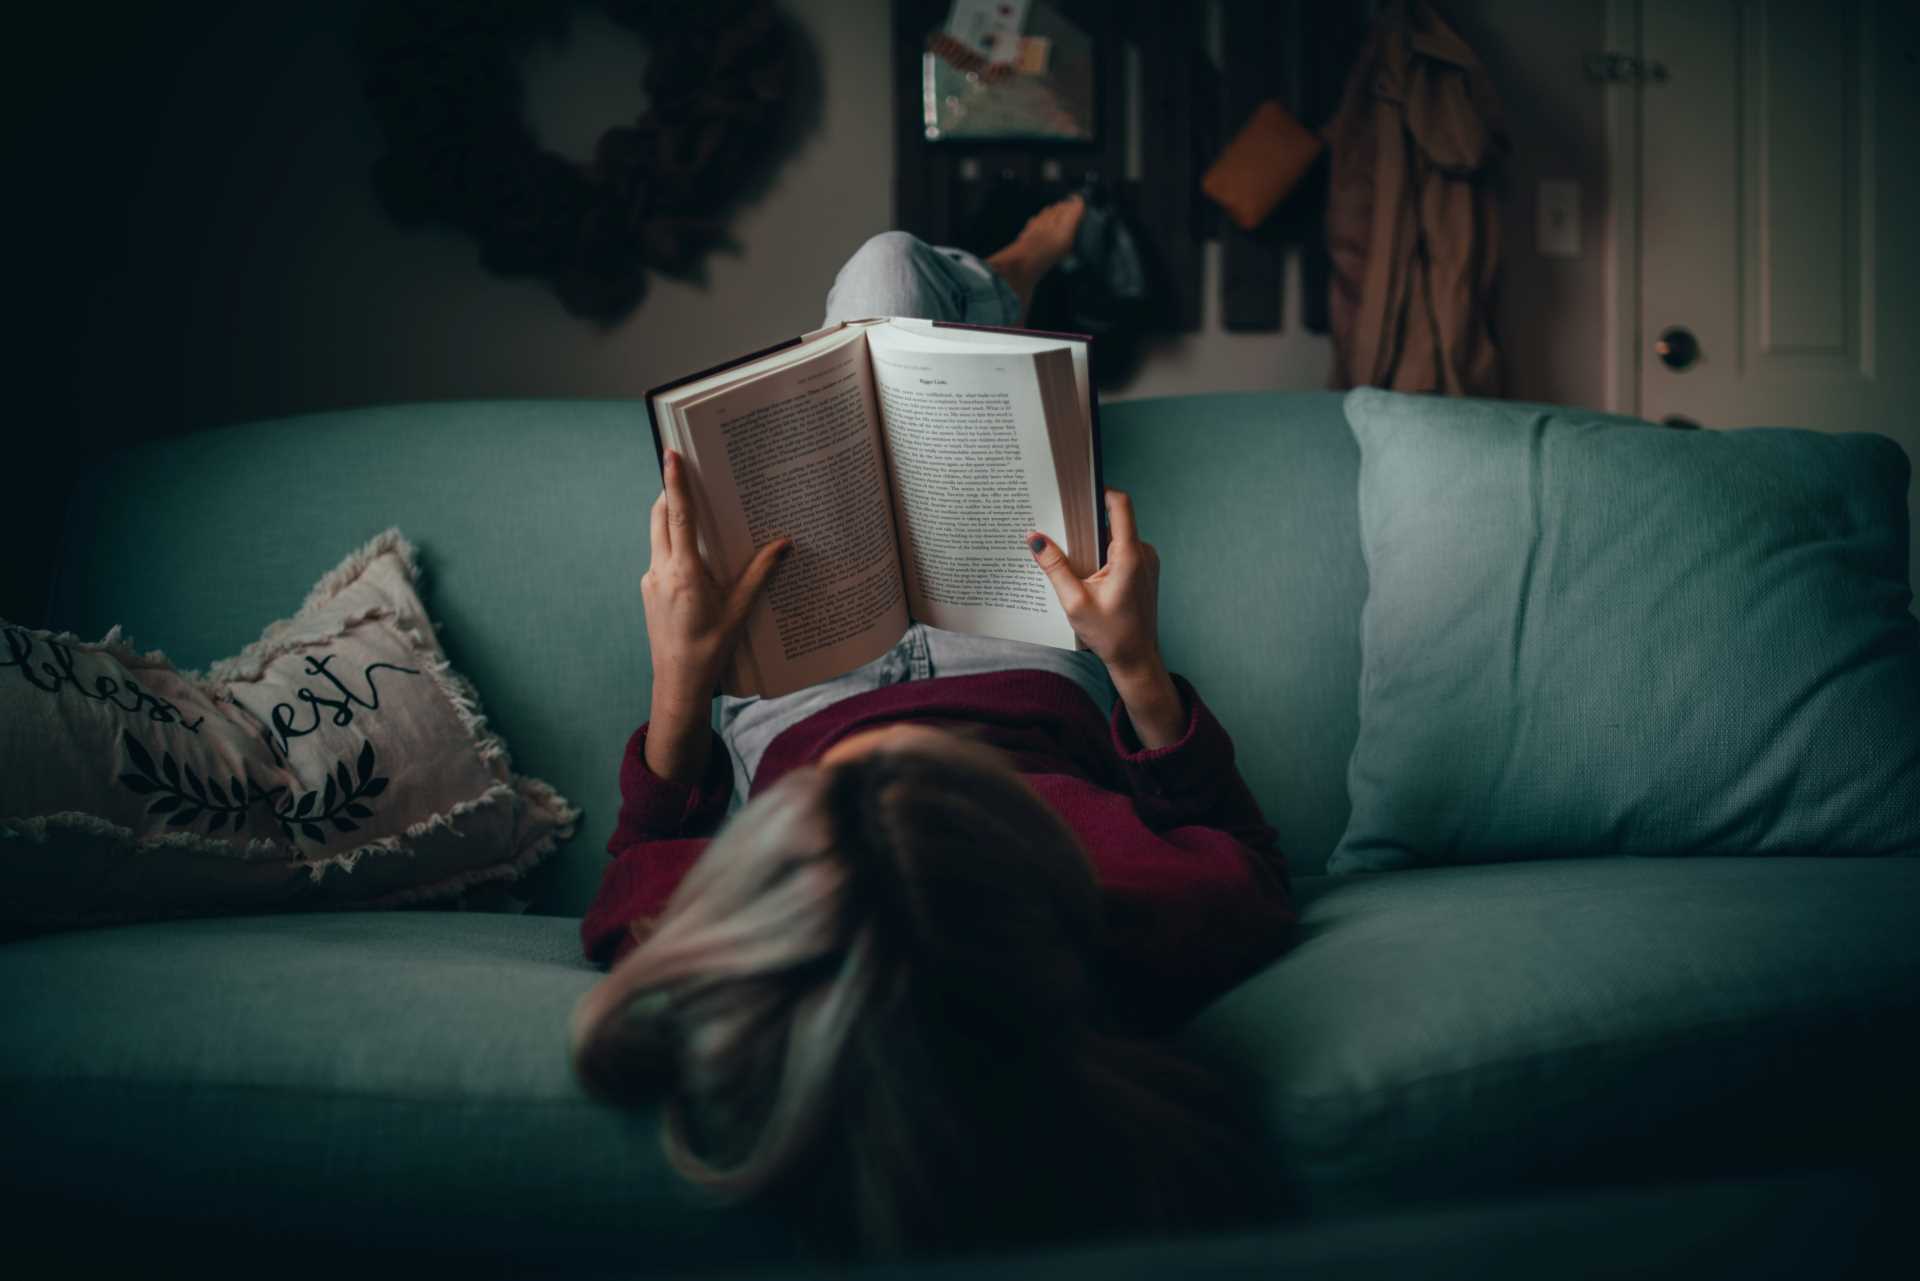 Saiba qual a importância de ler, pela sua longevidade. Fonte: Unsplash